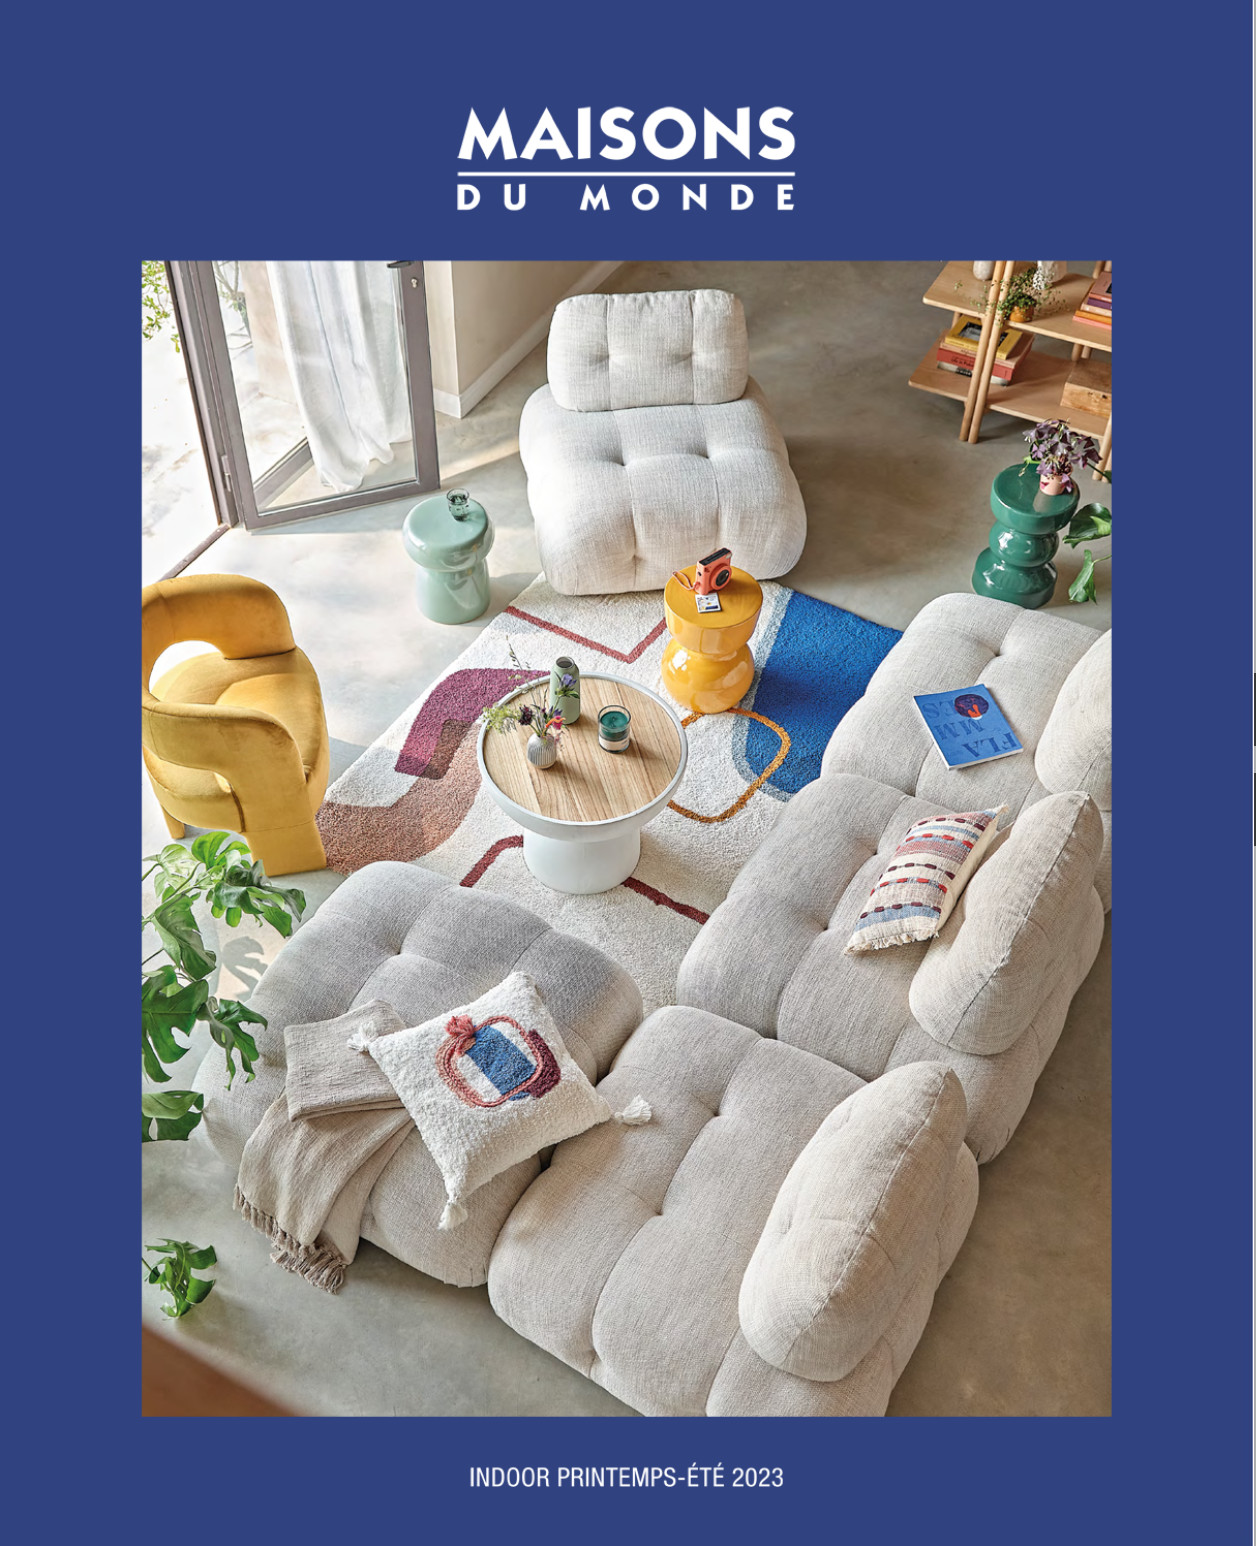 Maisons du Monde catalogue 2023 indoor